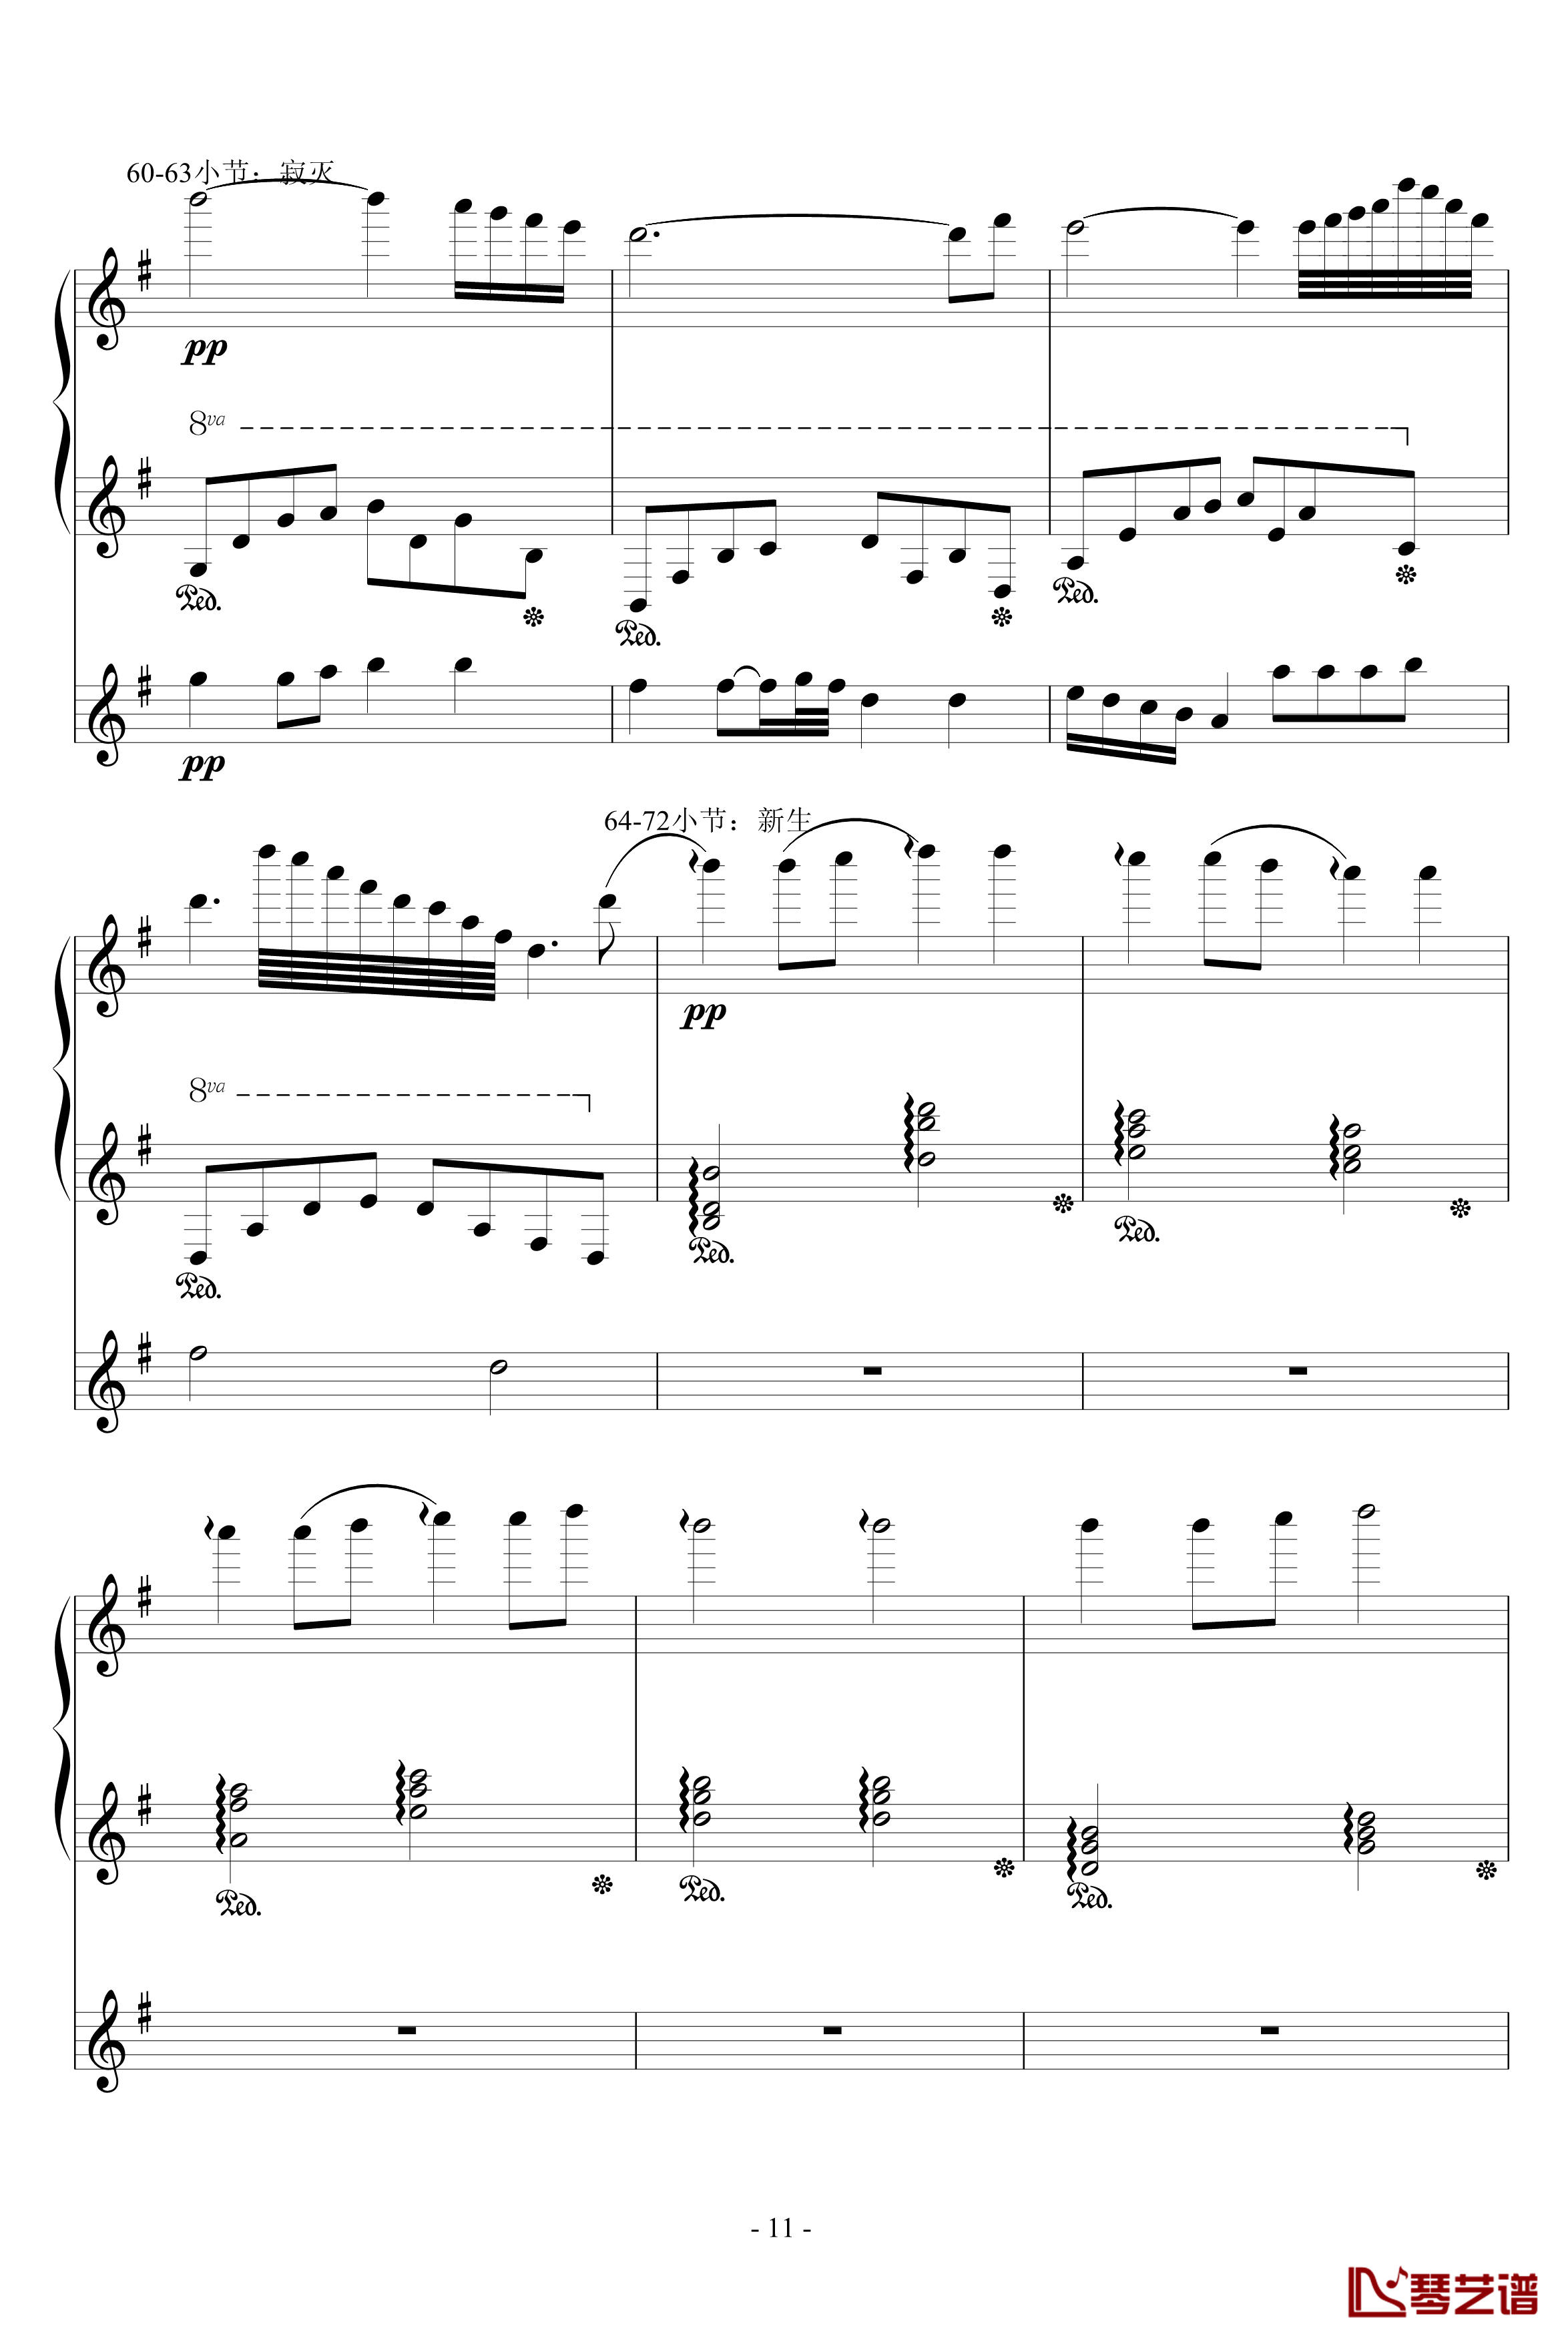 流星小幻想曲钢琴谱-修改-升c小调11